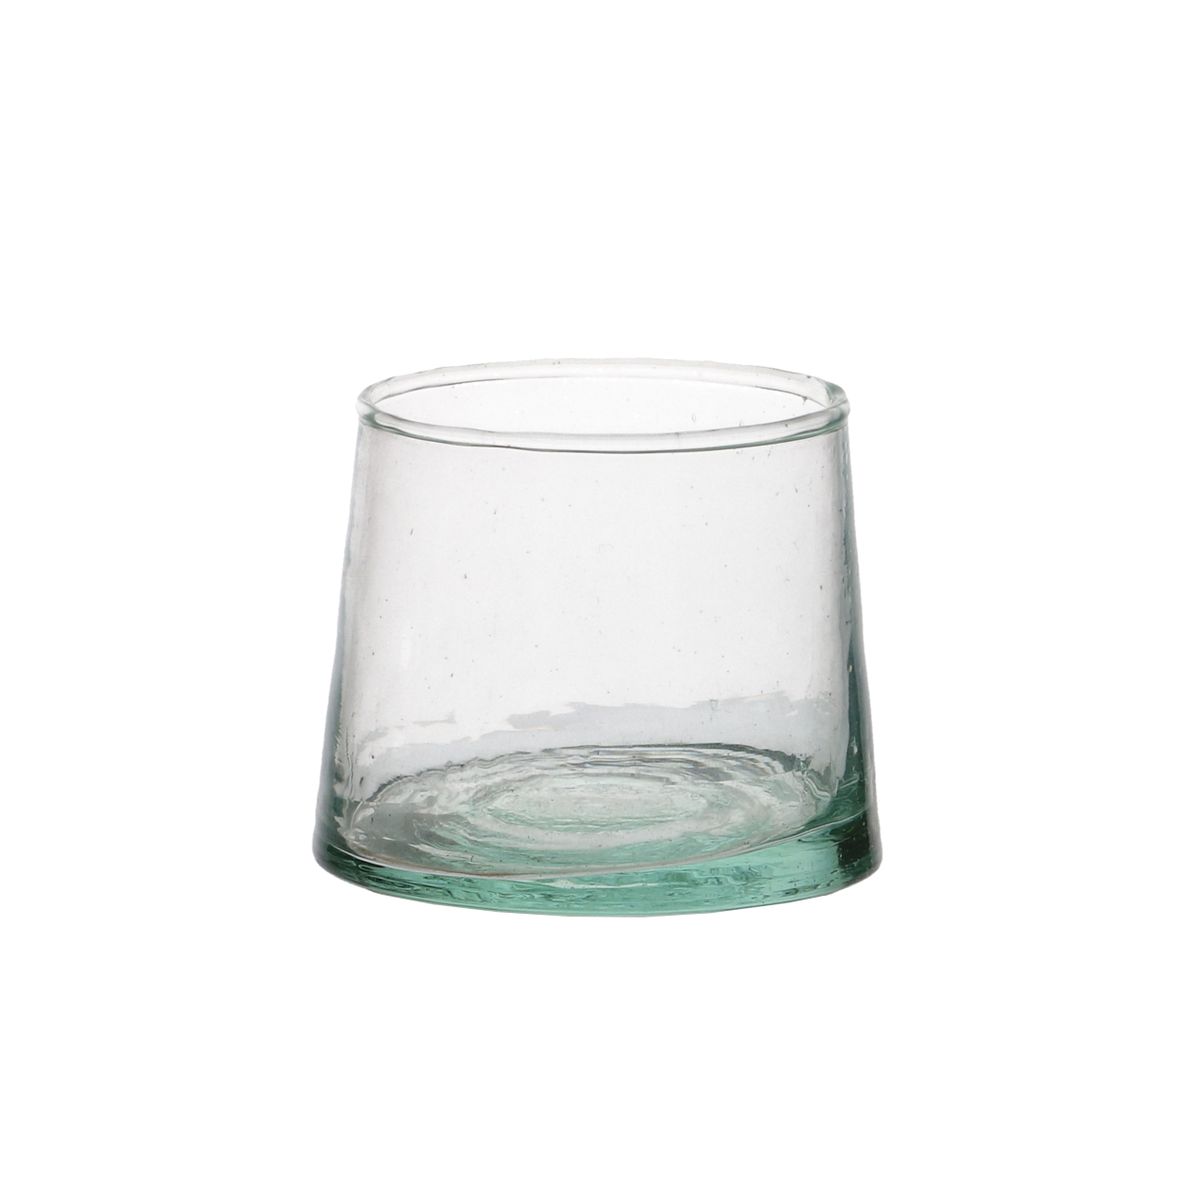 Keer terug Fotoelektrisch baden Marokkaans glas, taps, 7 cm | Glaswerk | Dille & Kamille